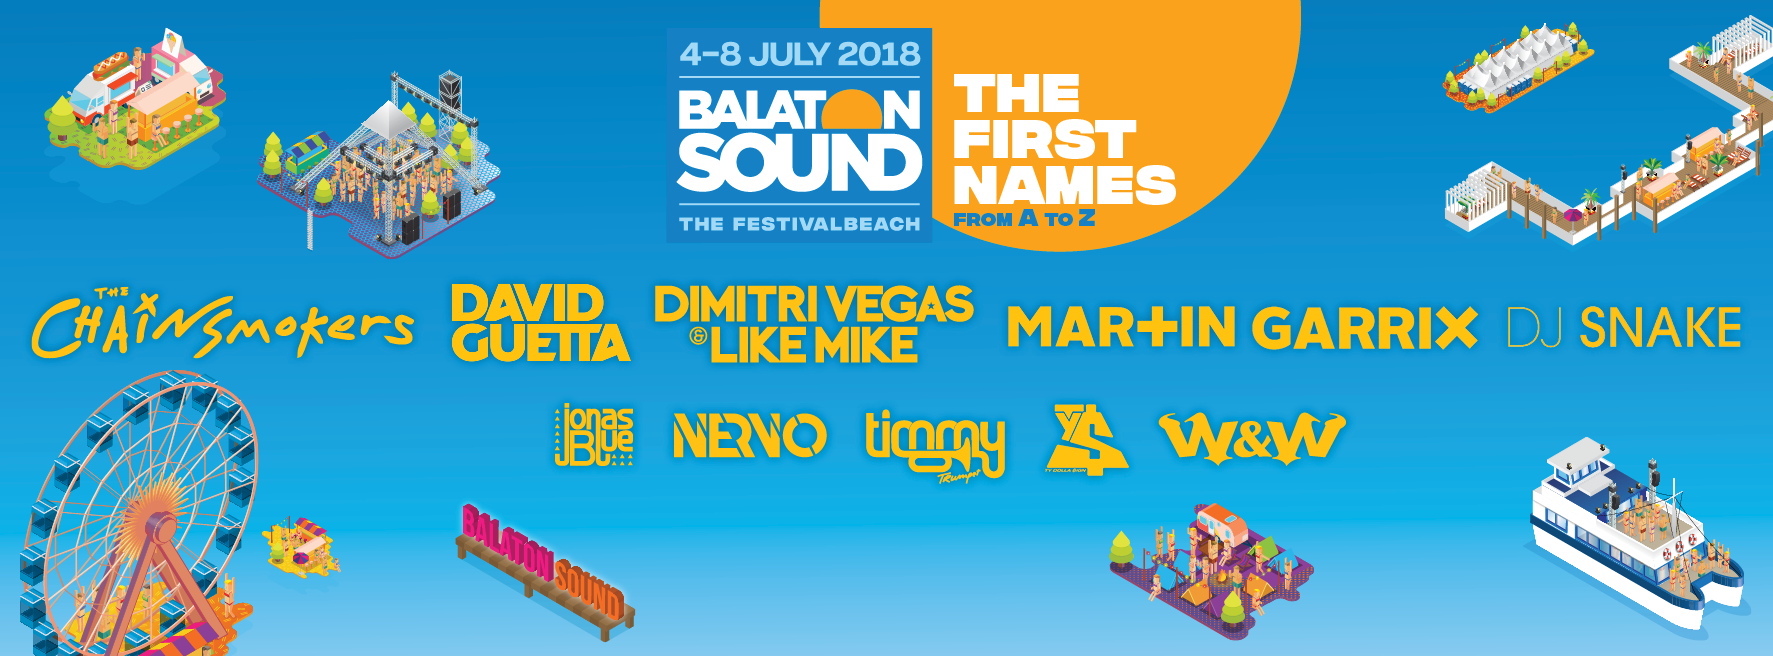 Primeros nombres para el Balaton Sound 2018